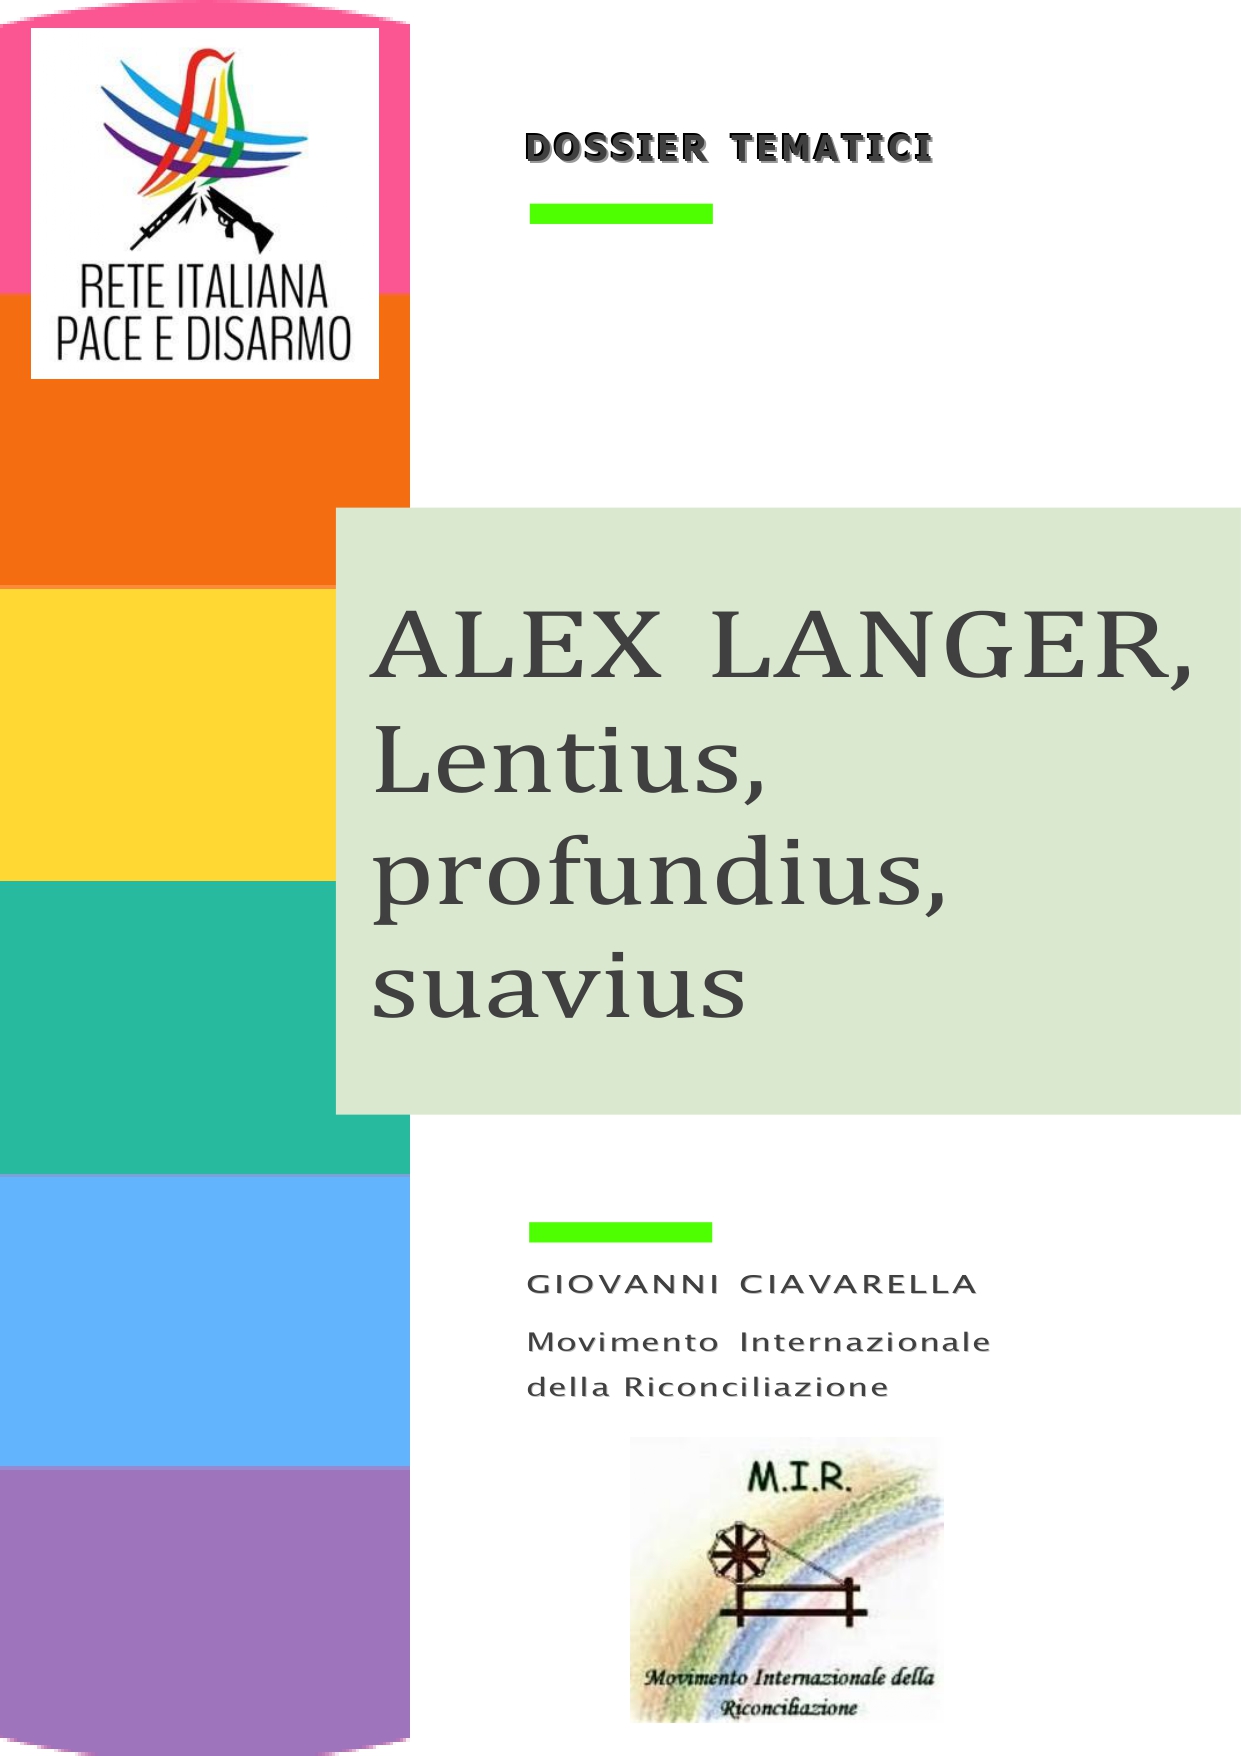 Alex Langer, Lentius, profundius, suavius